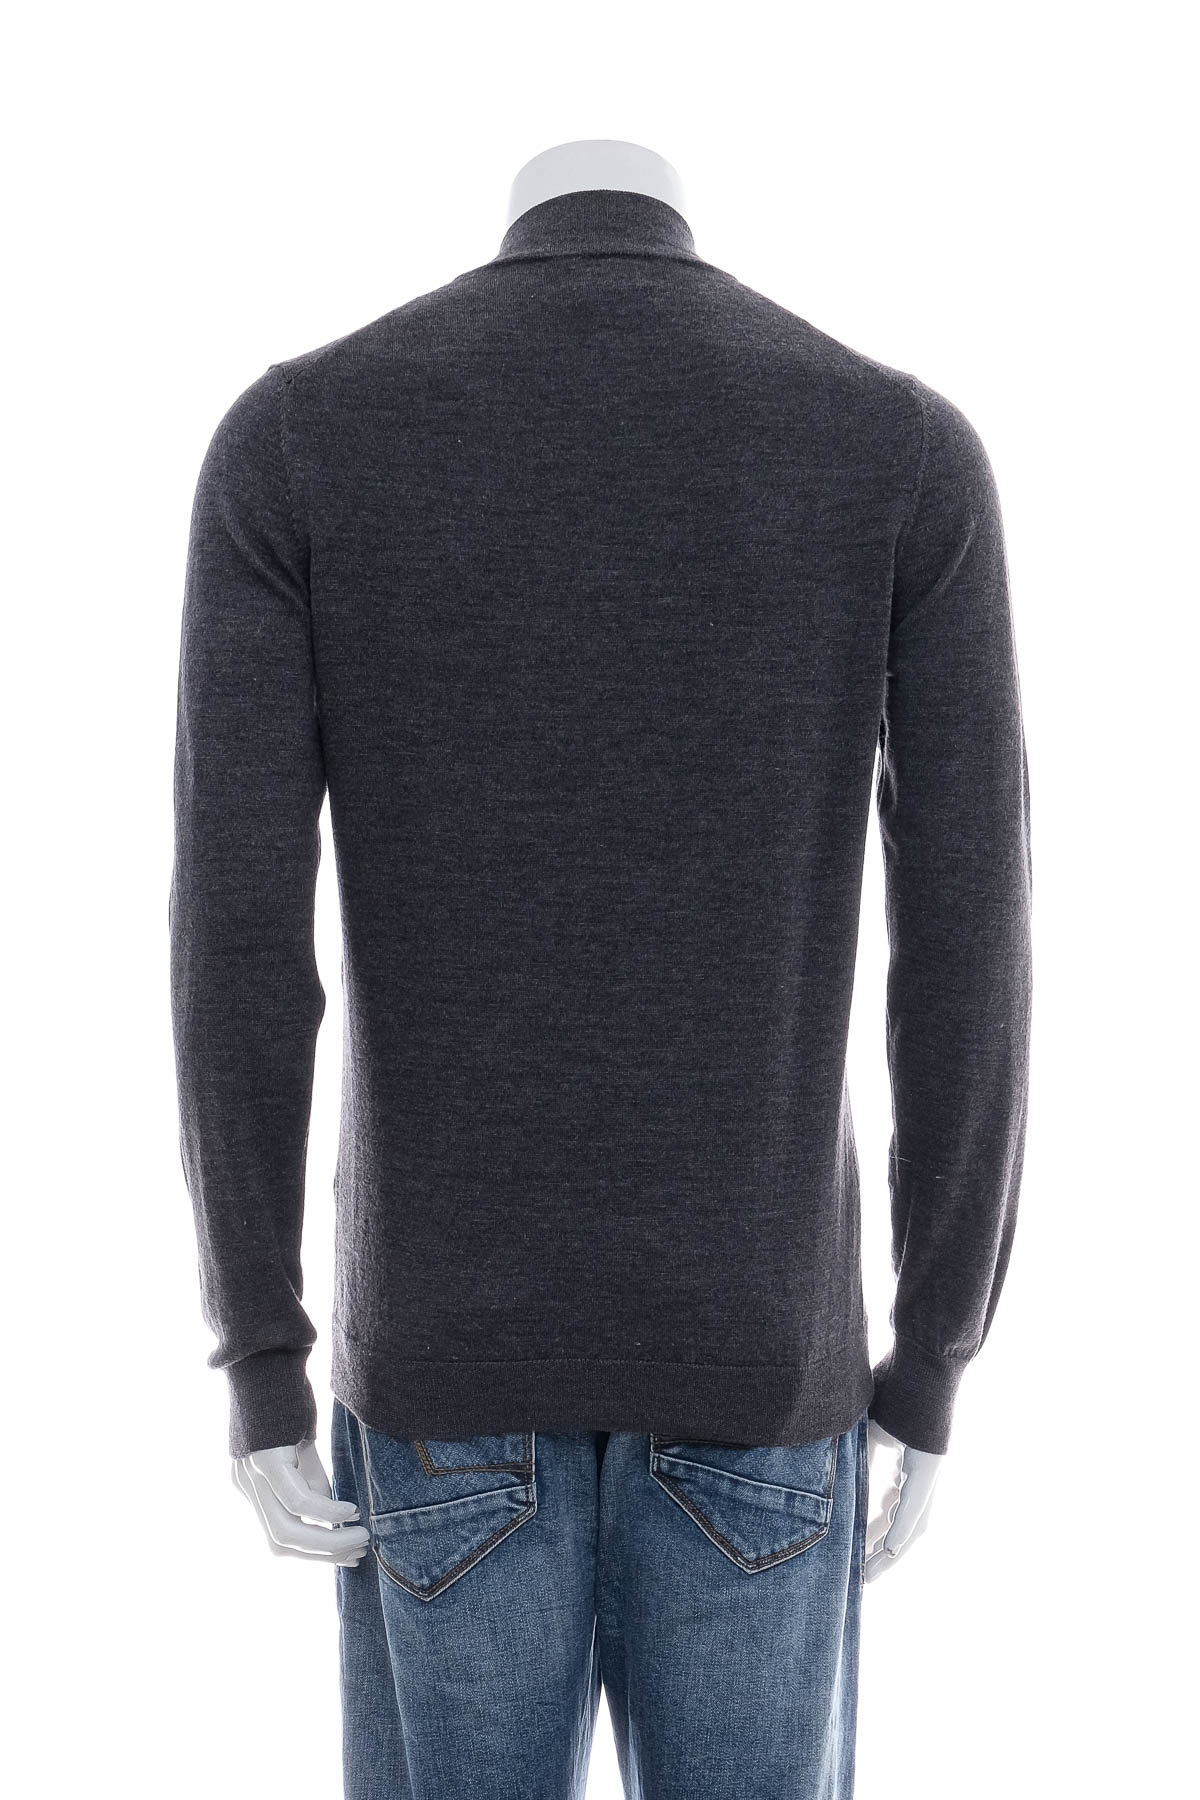 Men's sweater - Pedro del Hierro - 1